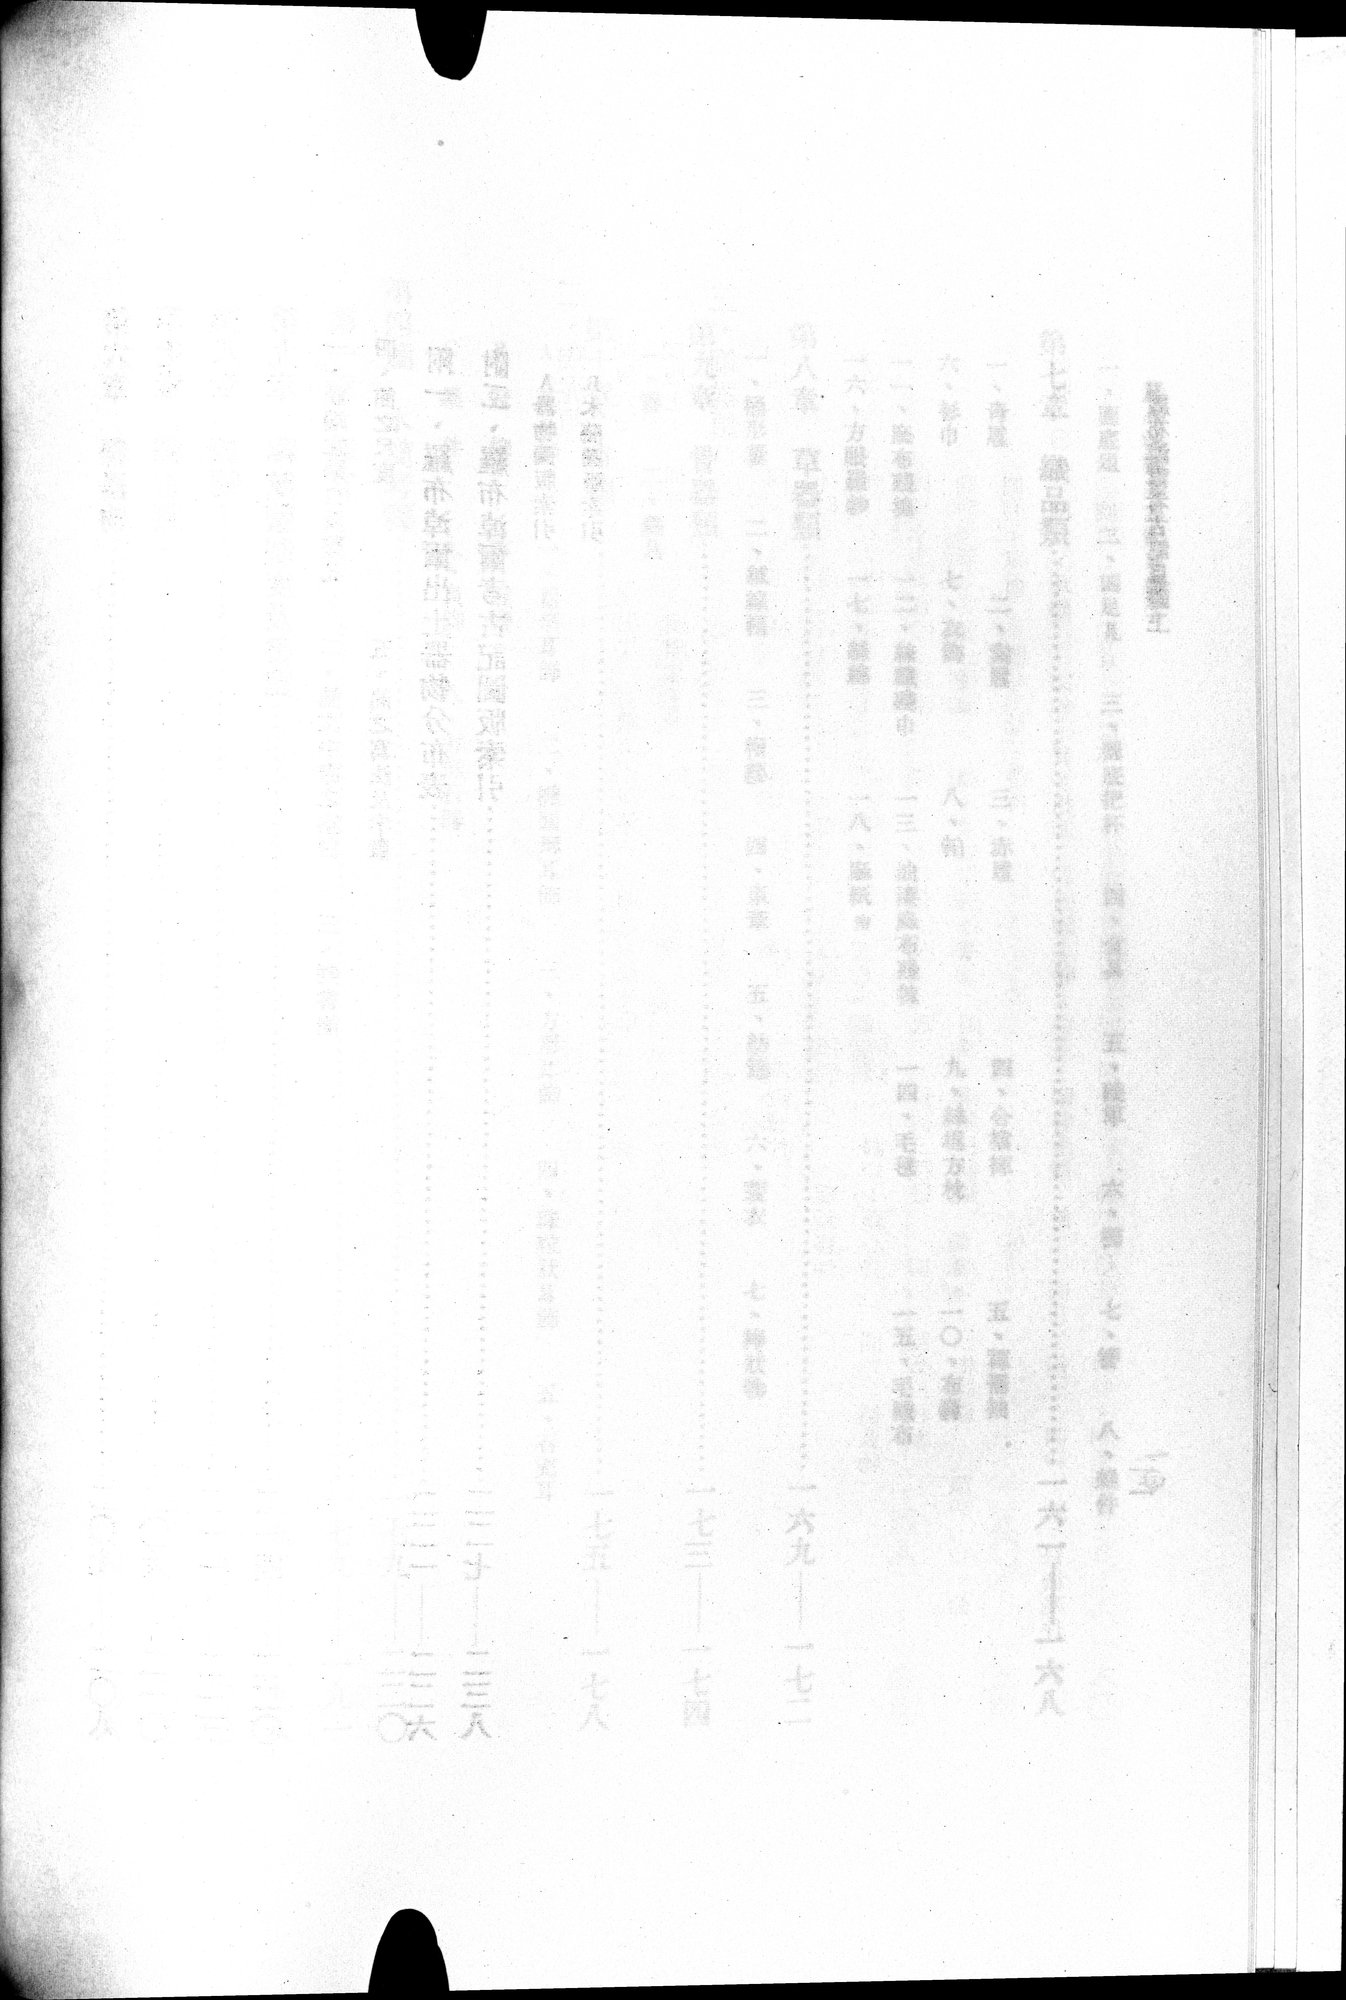 羅布淖爾考古記 : vol.1 / Page 18 (Grayscale High Resolution Image)